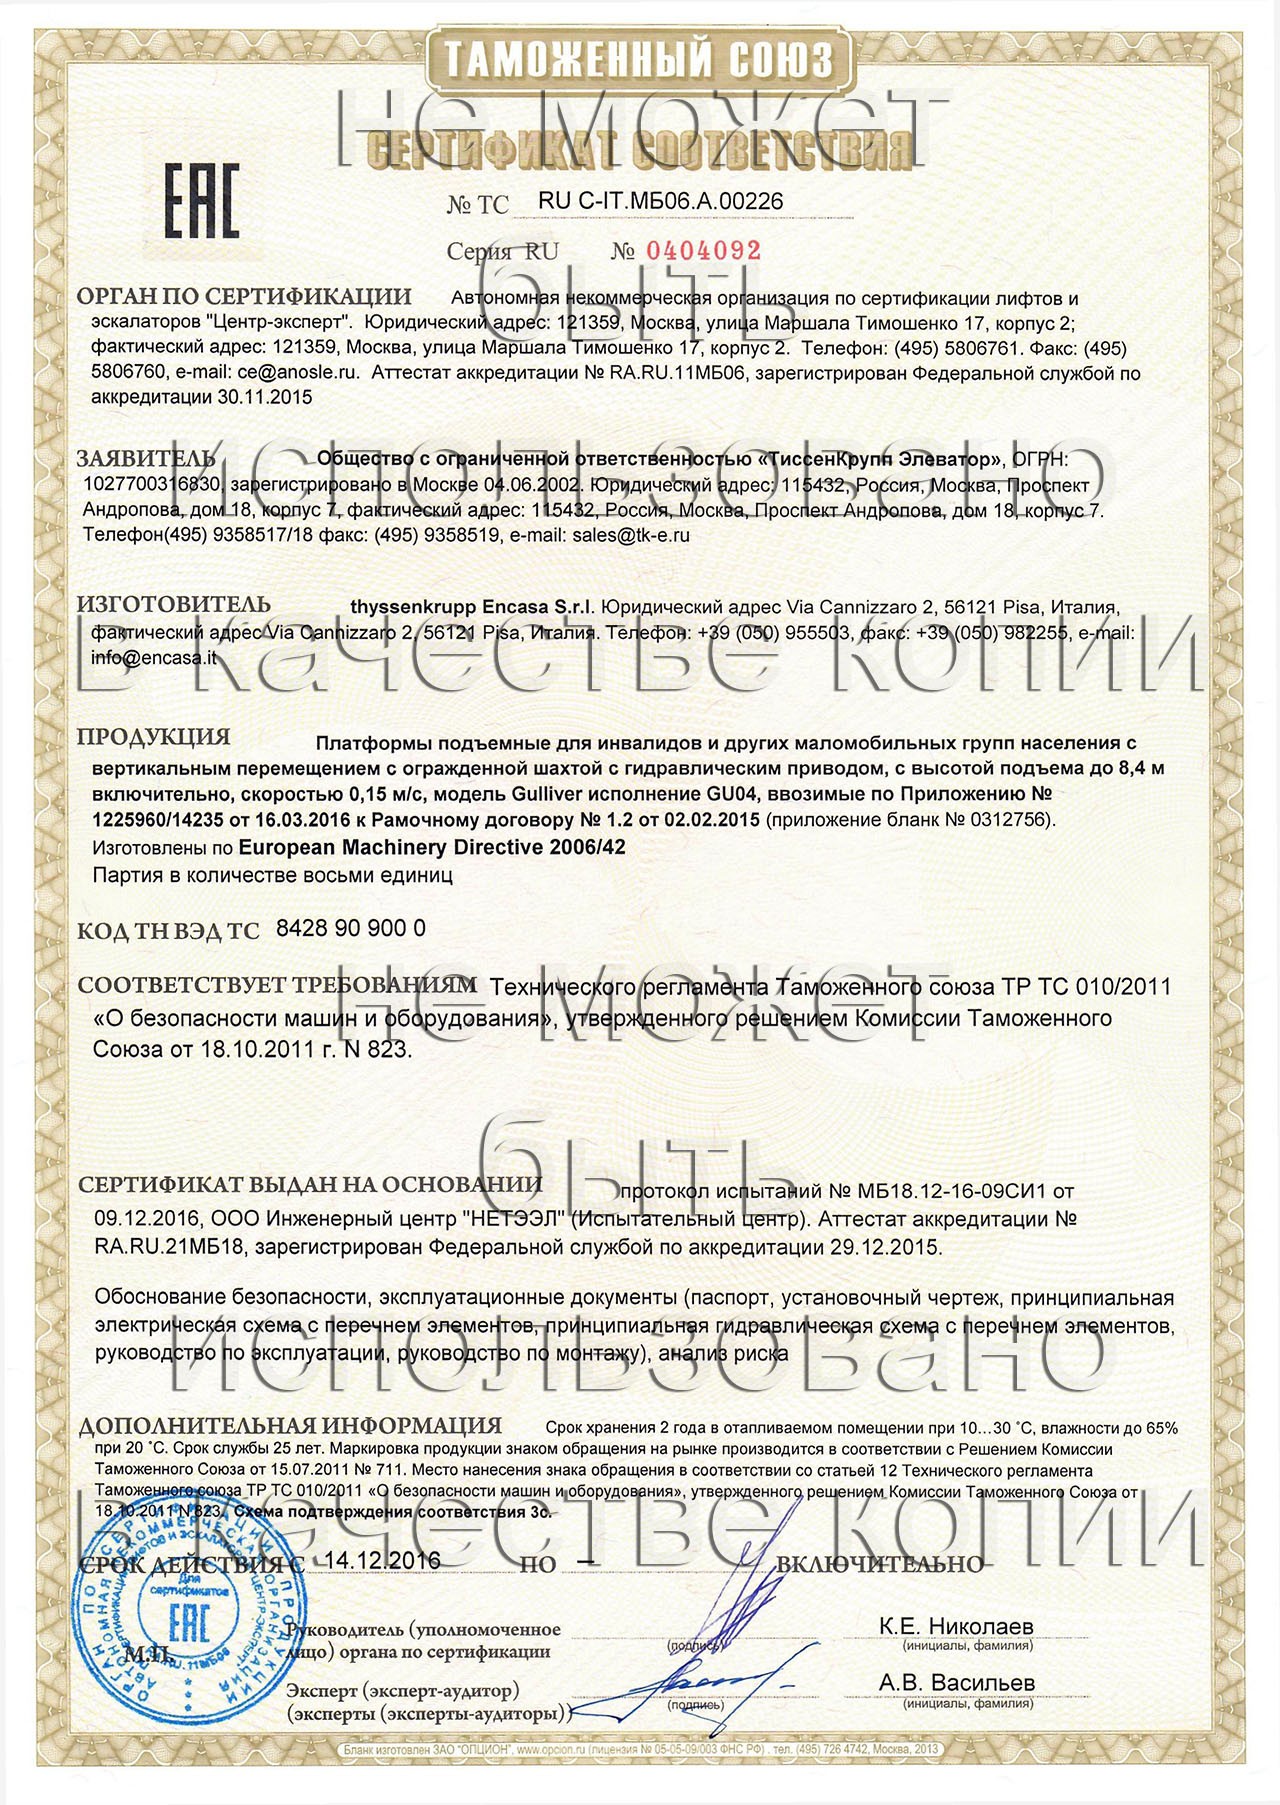  сертификат ТС RU С-IT.МБ06.А.00226 на платформы подъемные для инвалидов и других маломобильных групп населения